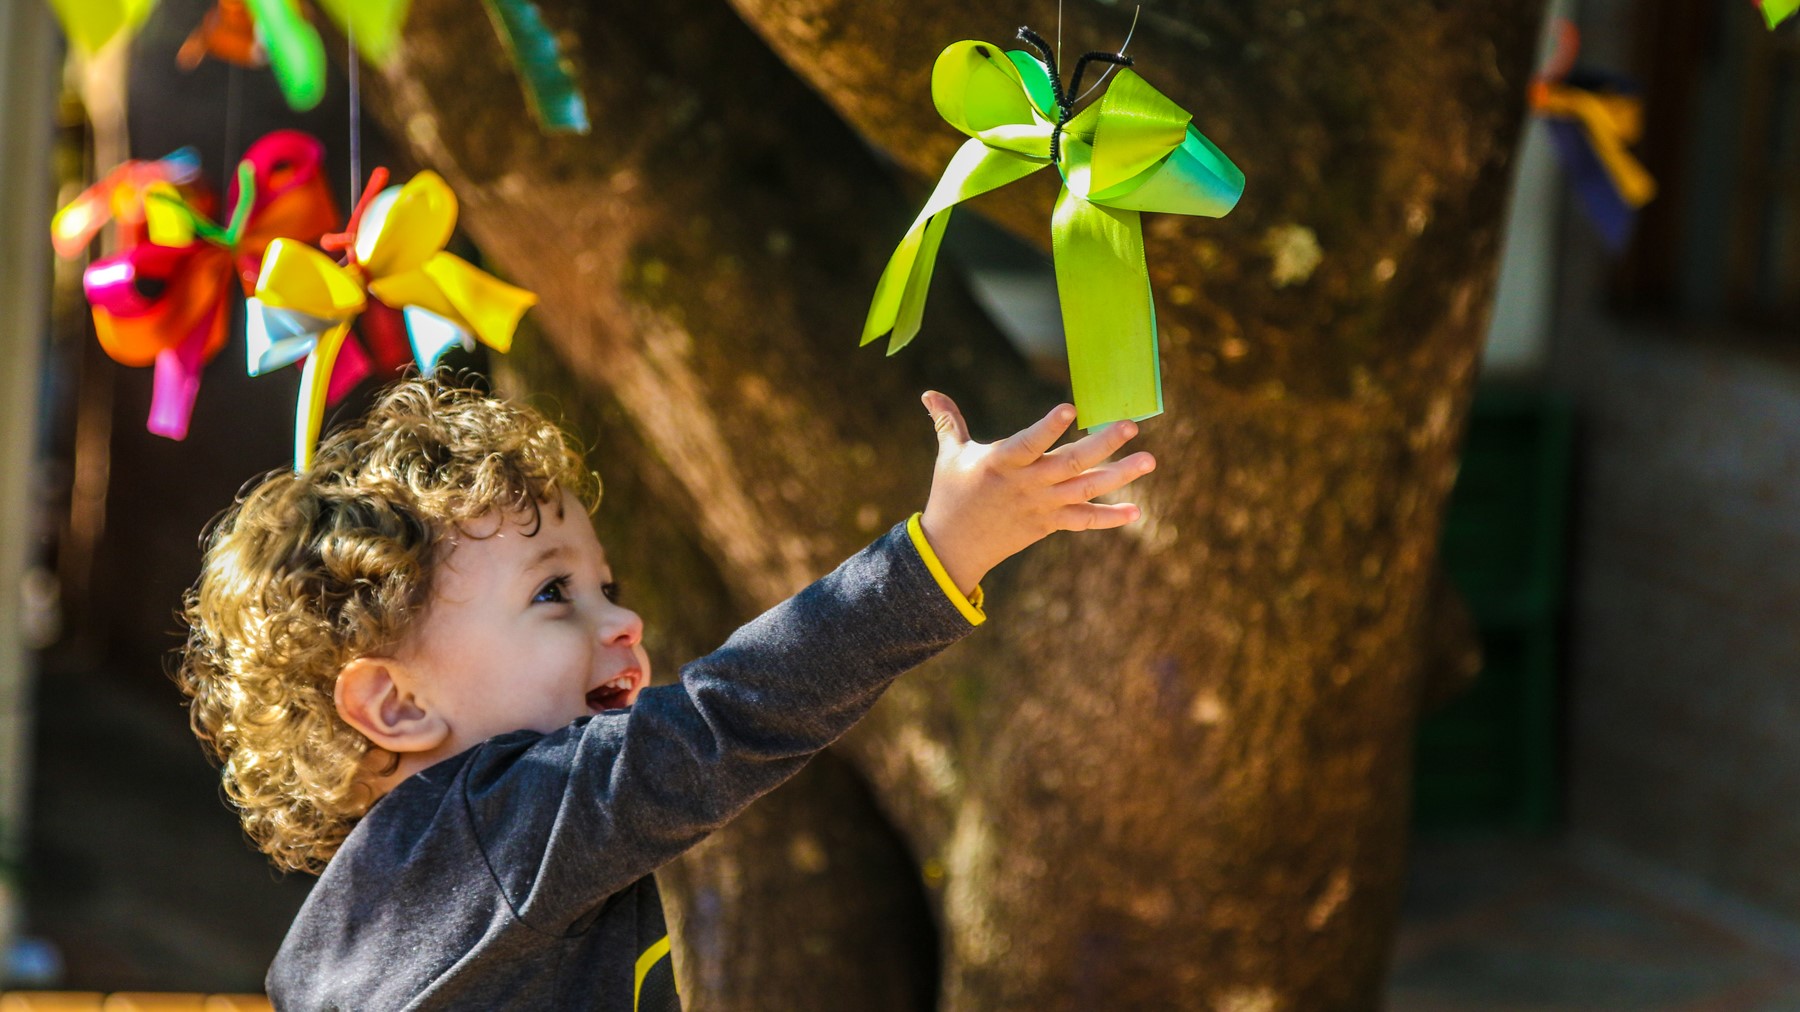 criança sorridente tenta alcançar um laço verde pendurado em uma árvore.